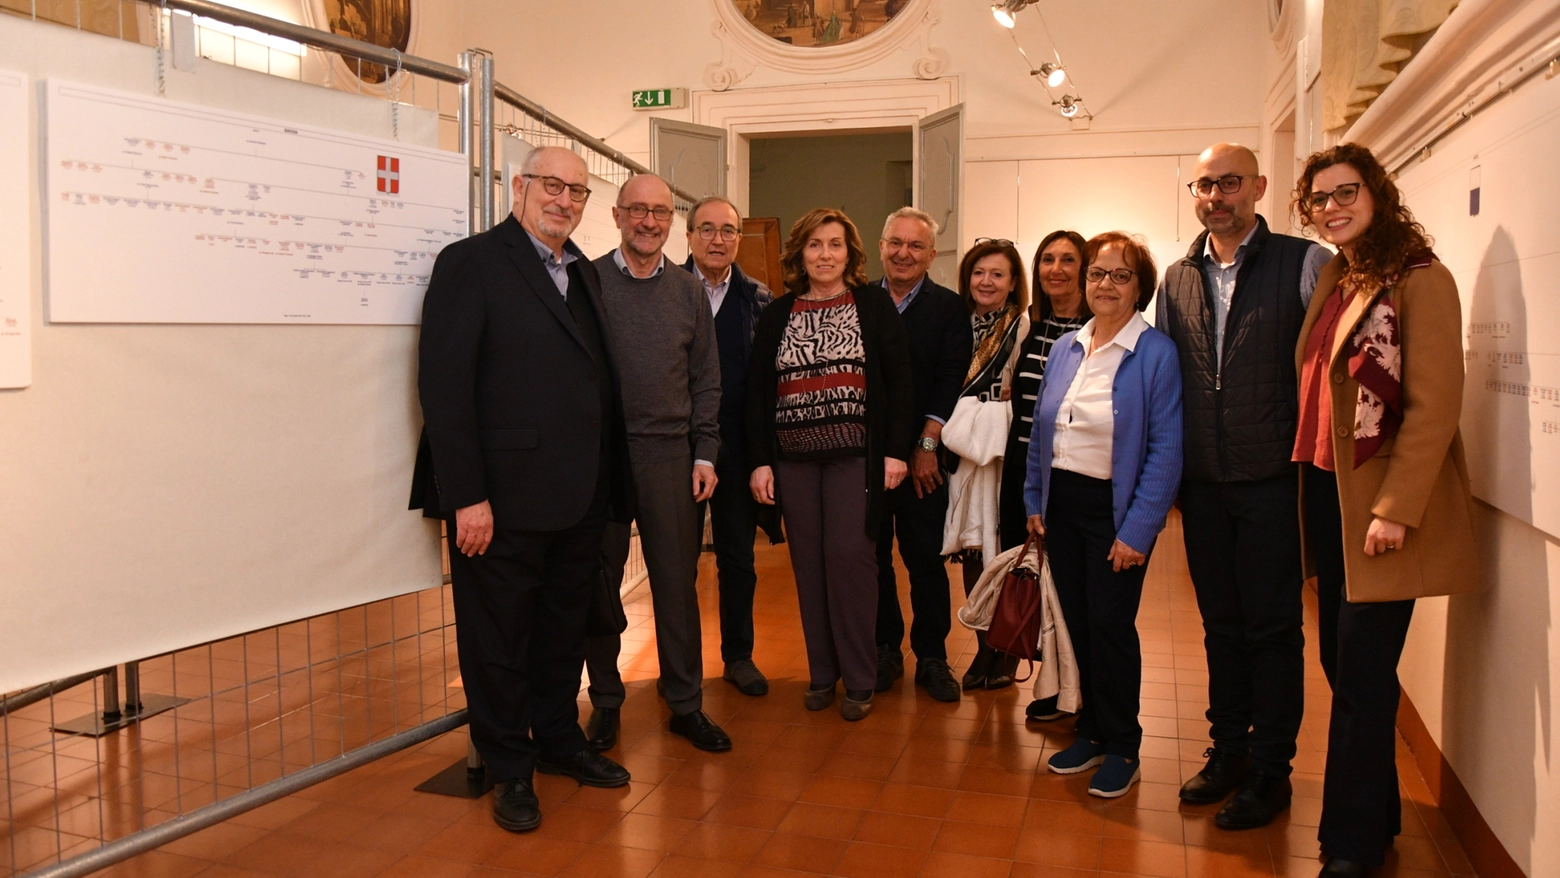 La famiglia Savoia in visita a palazzo Morattini, con gli organizzatori (foto Salieri)